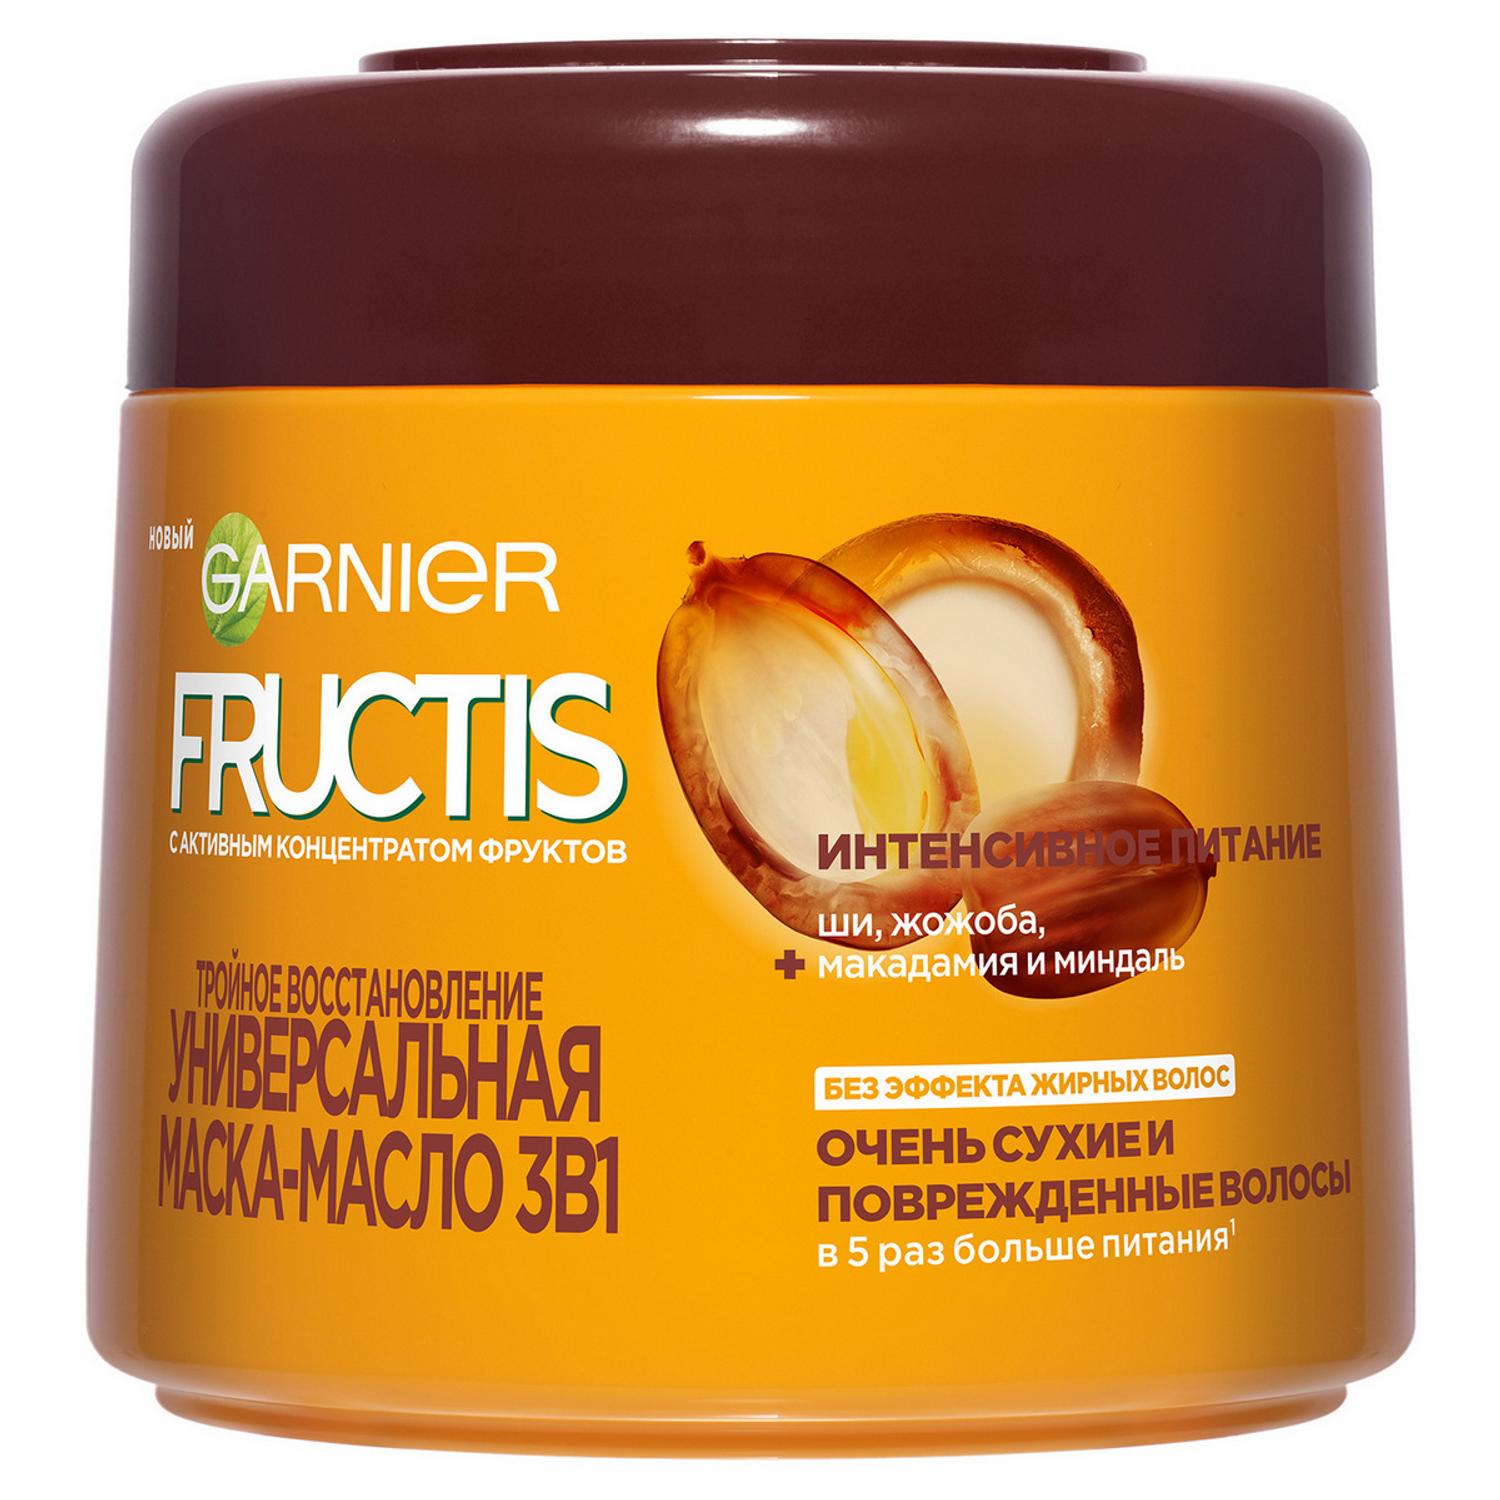 цена Маска-масло для волос Garnier Fructis Тройное восстановление 300 мл